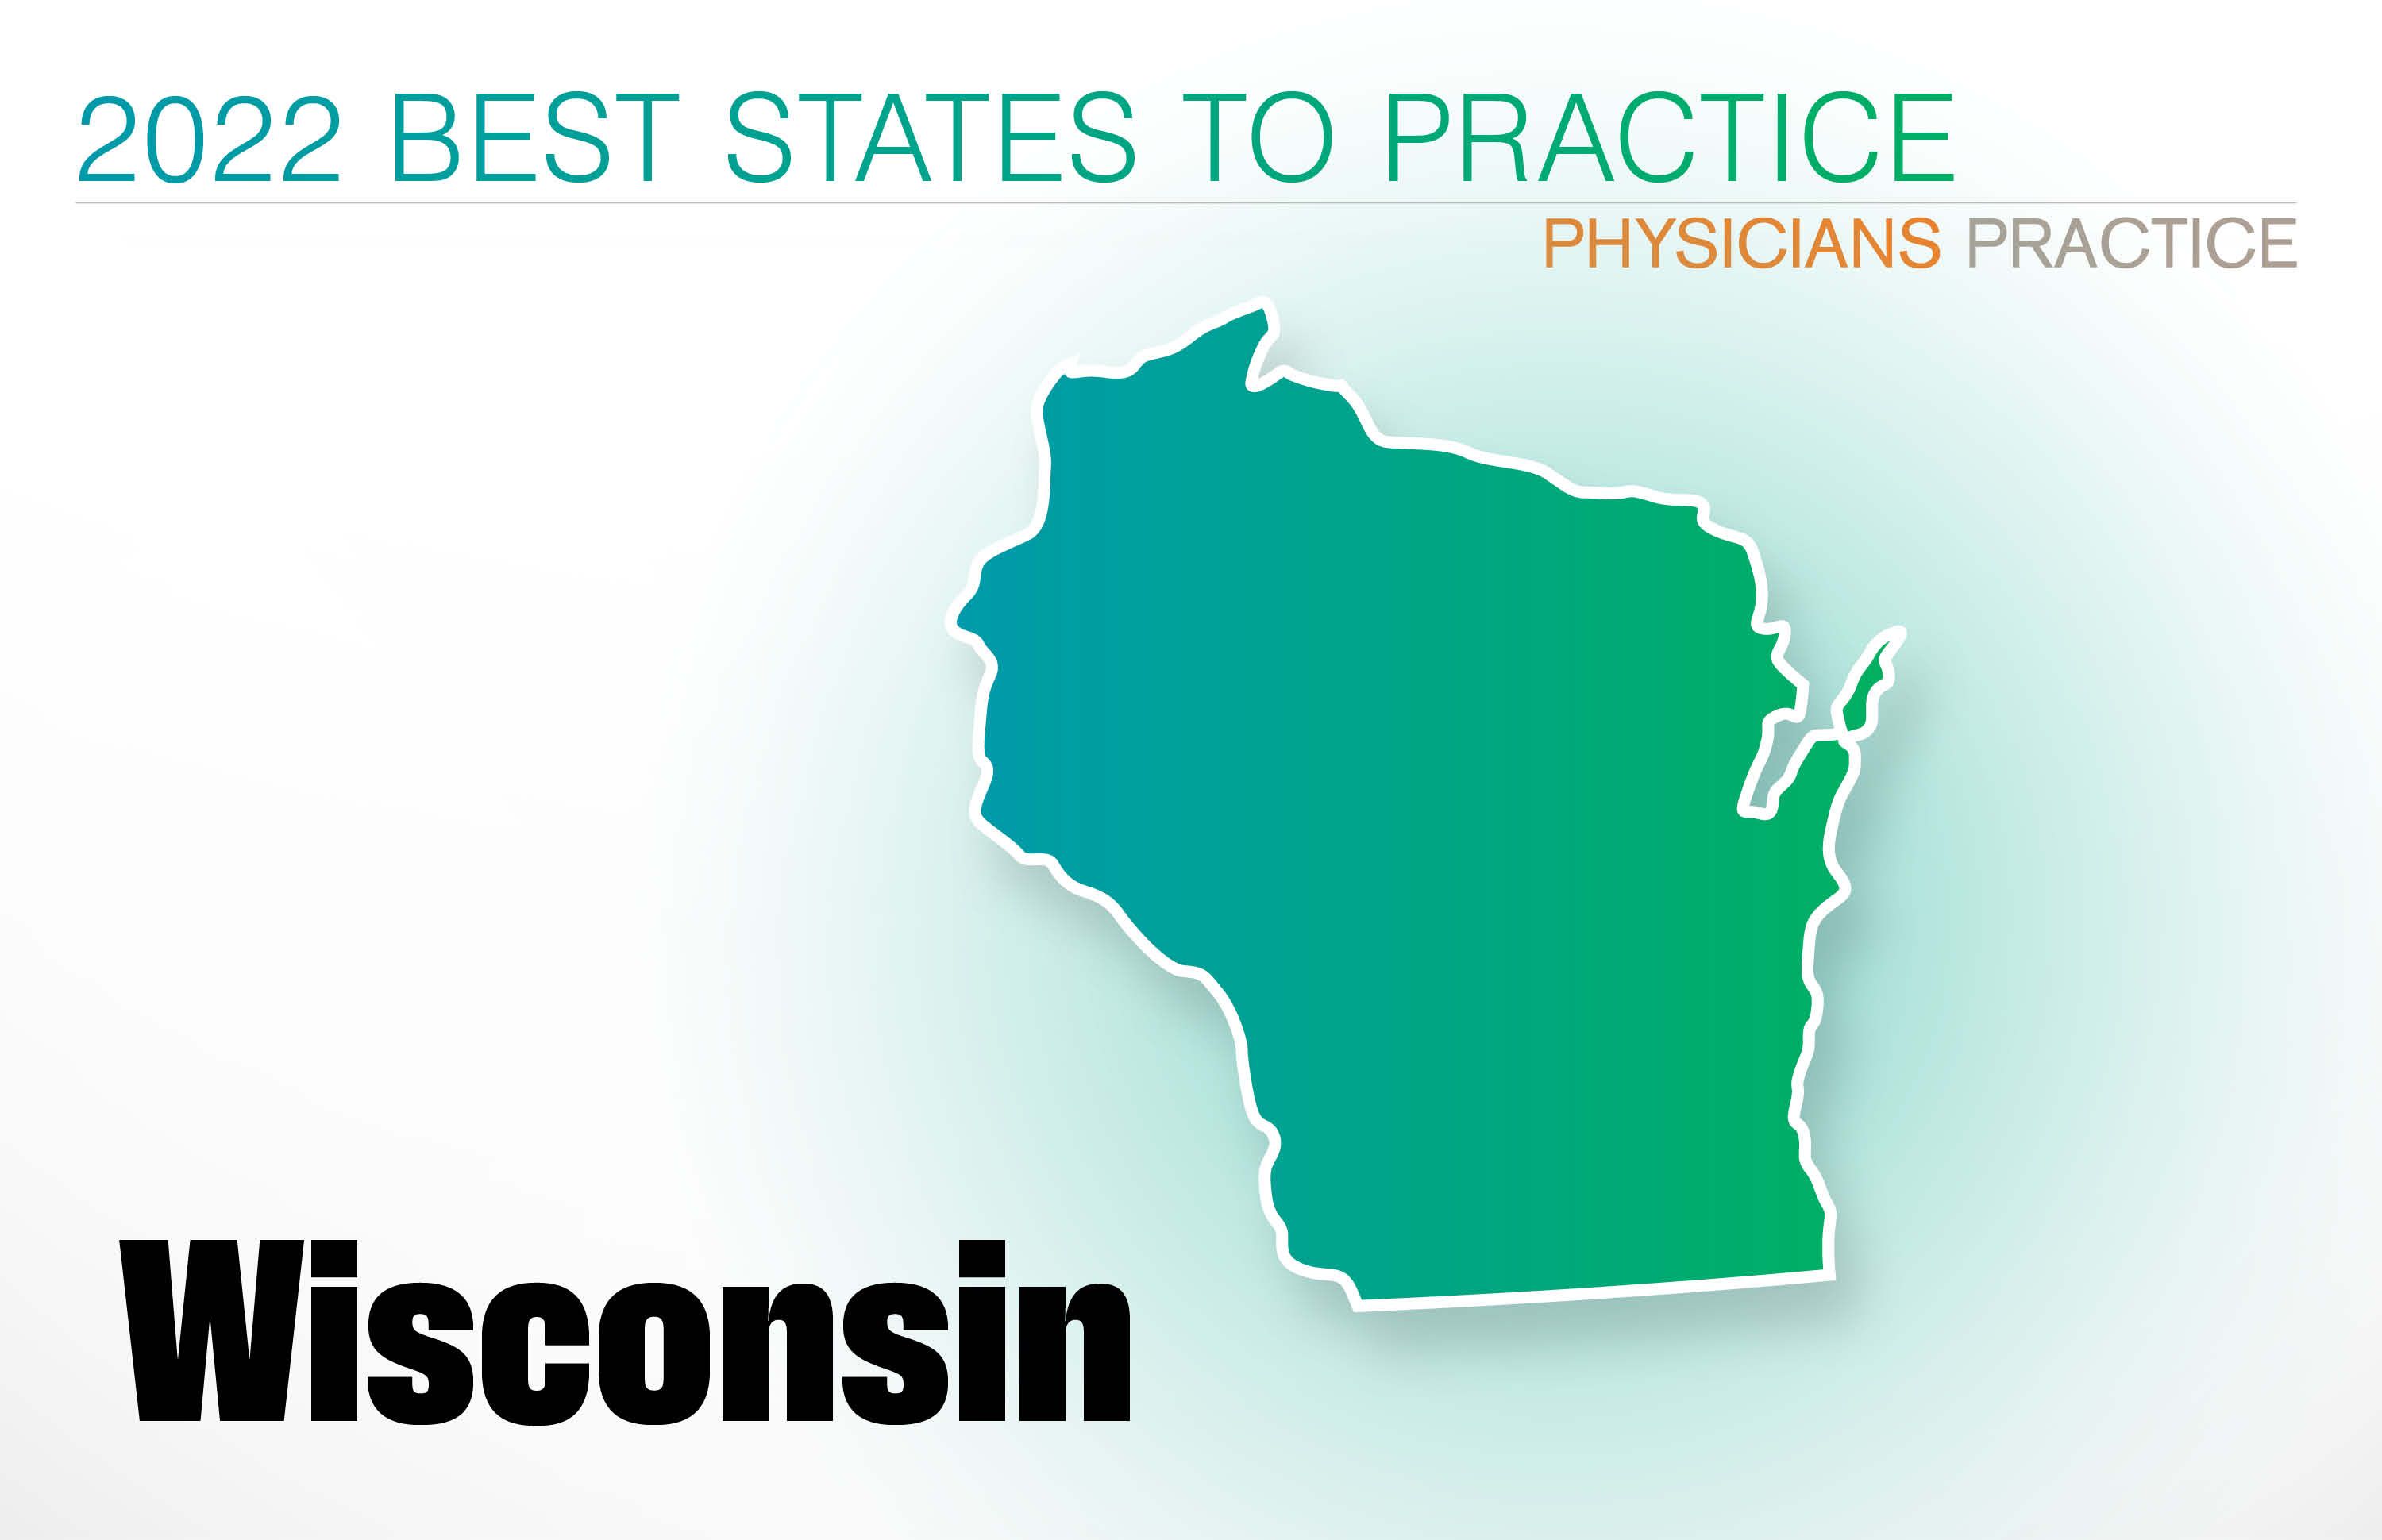 #1 Wisconsin